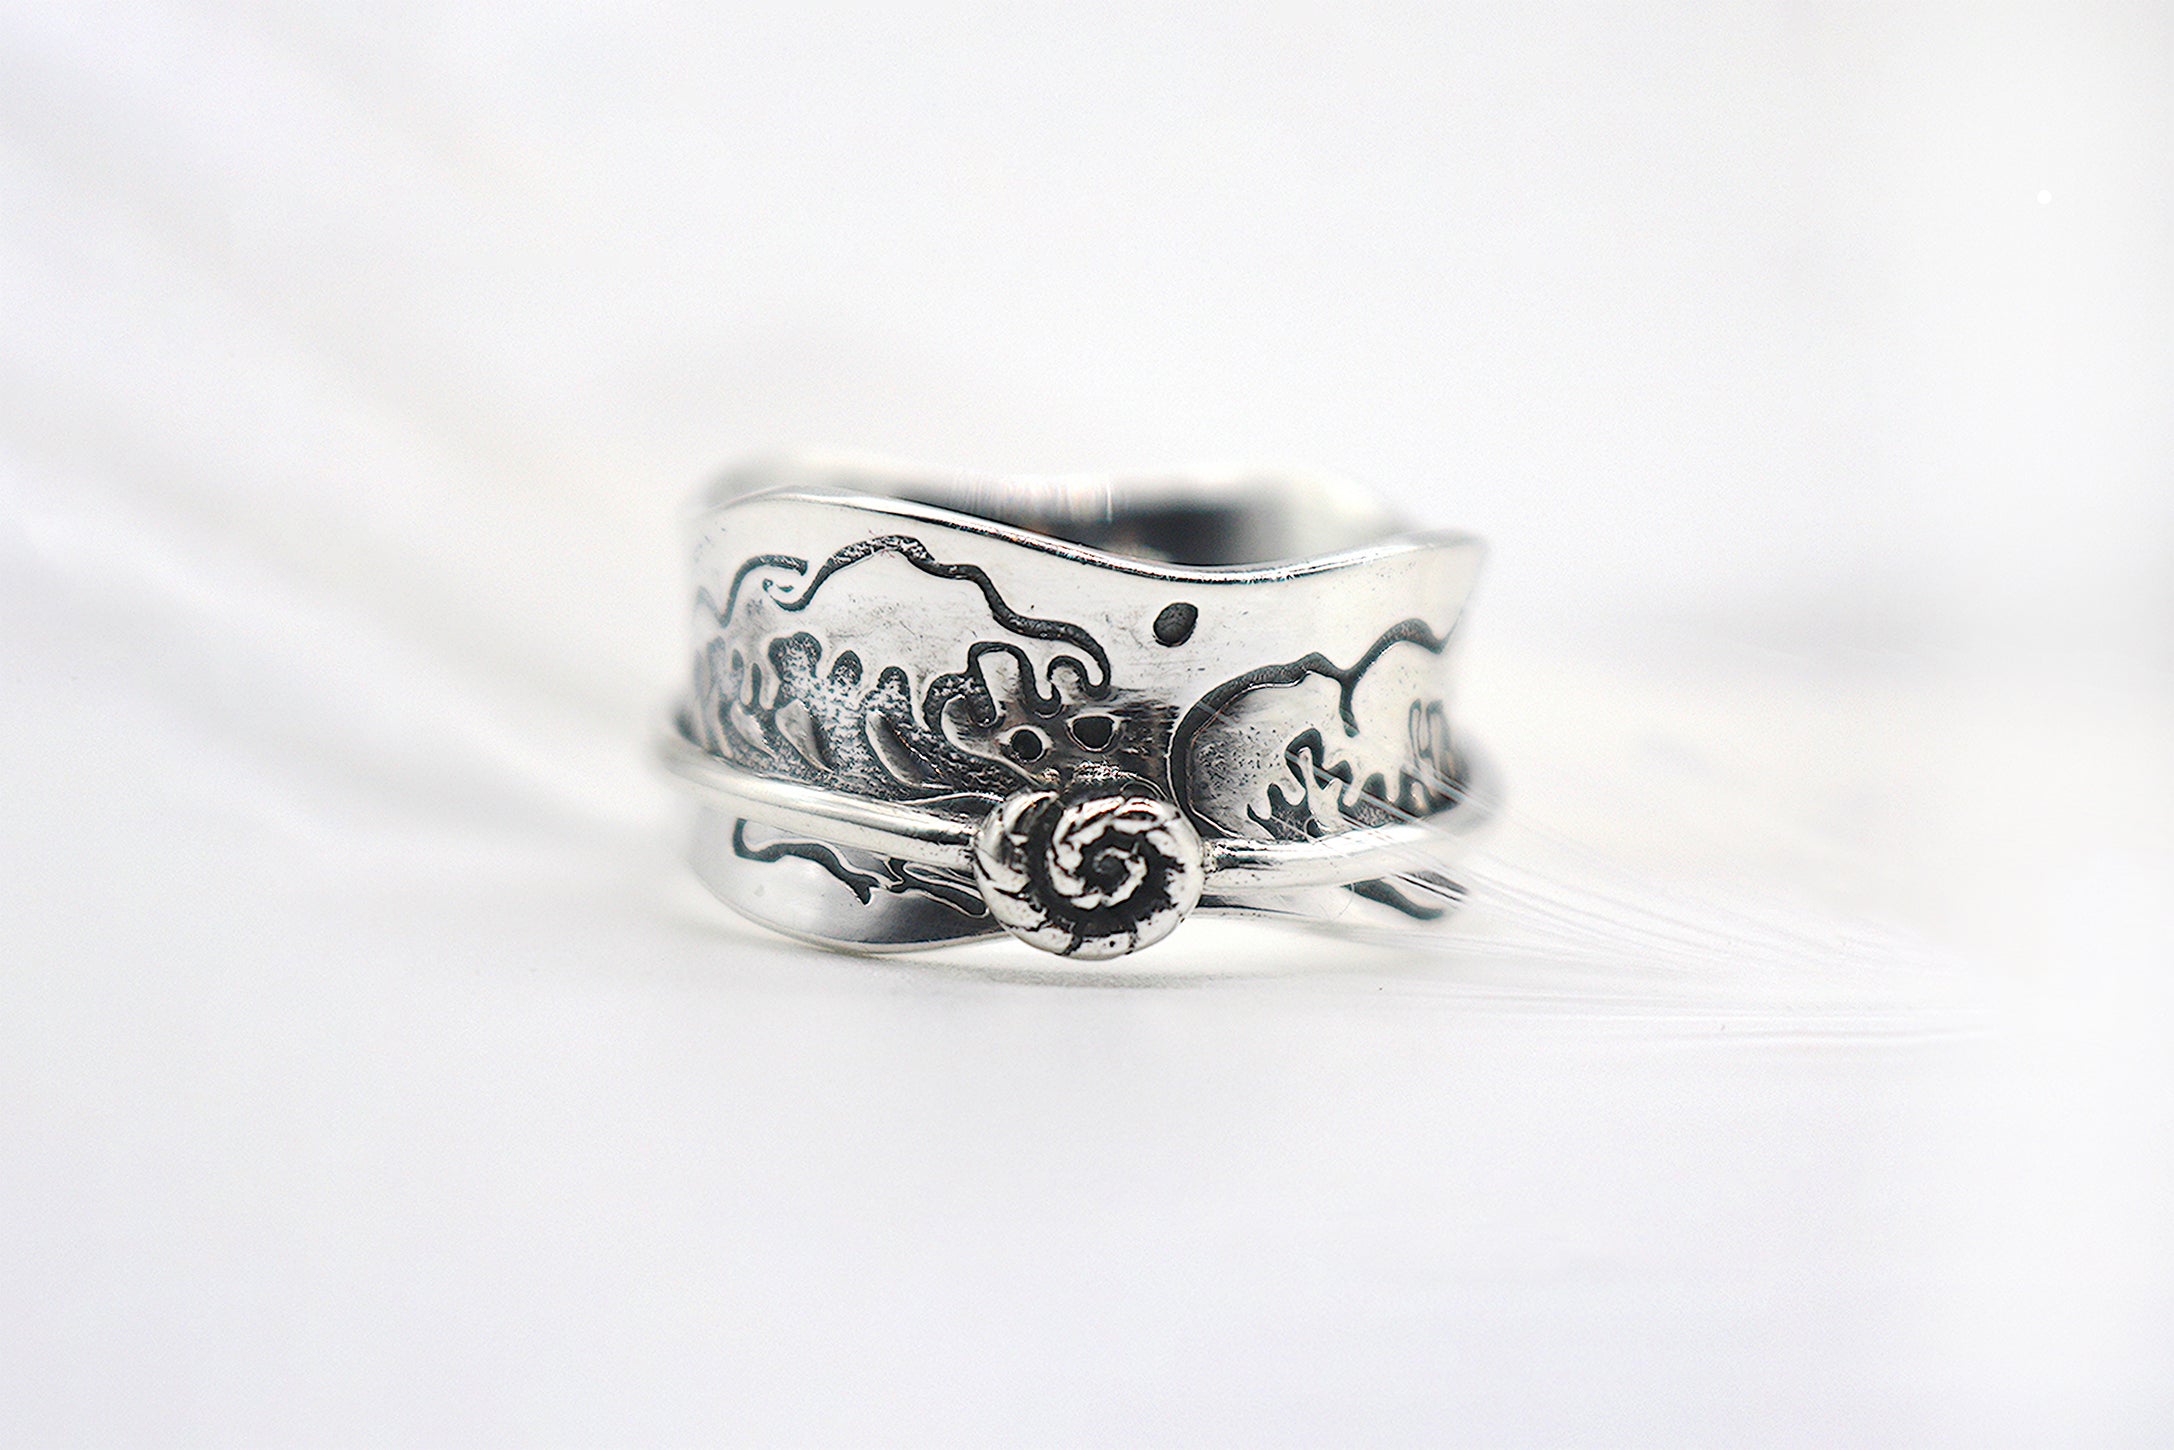 Ocean Kiss Sterling Silver Spinner Ring